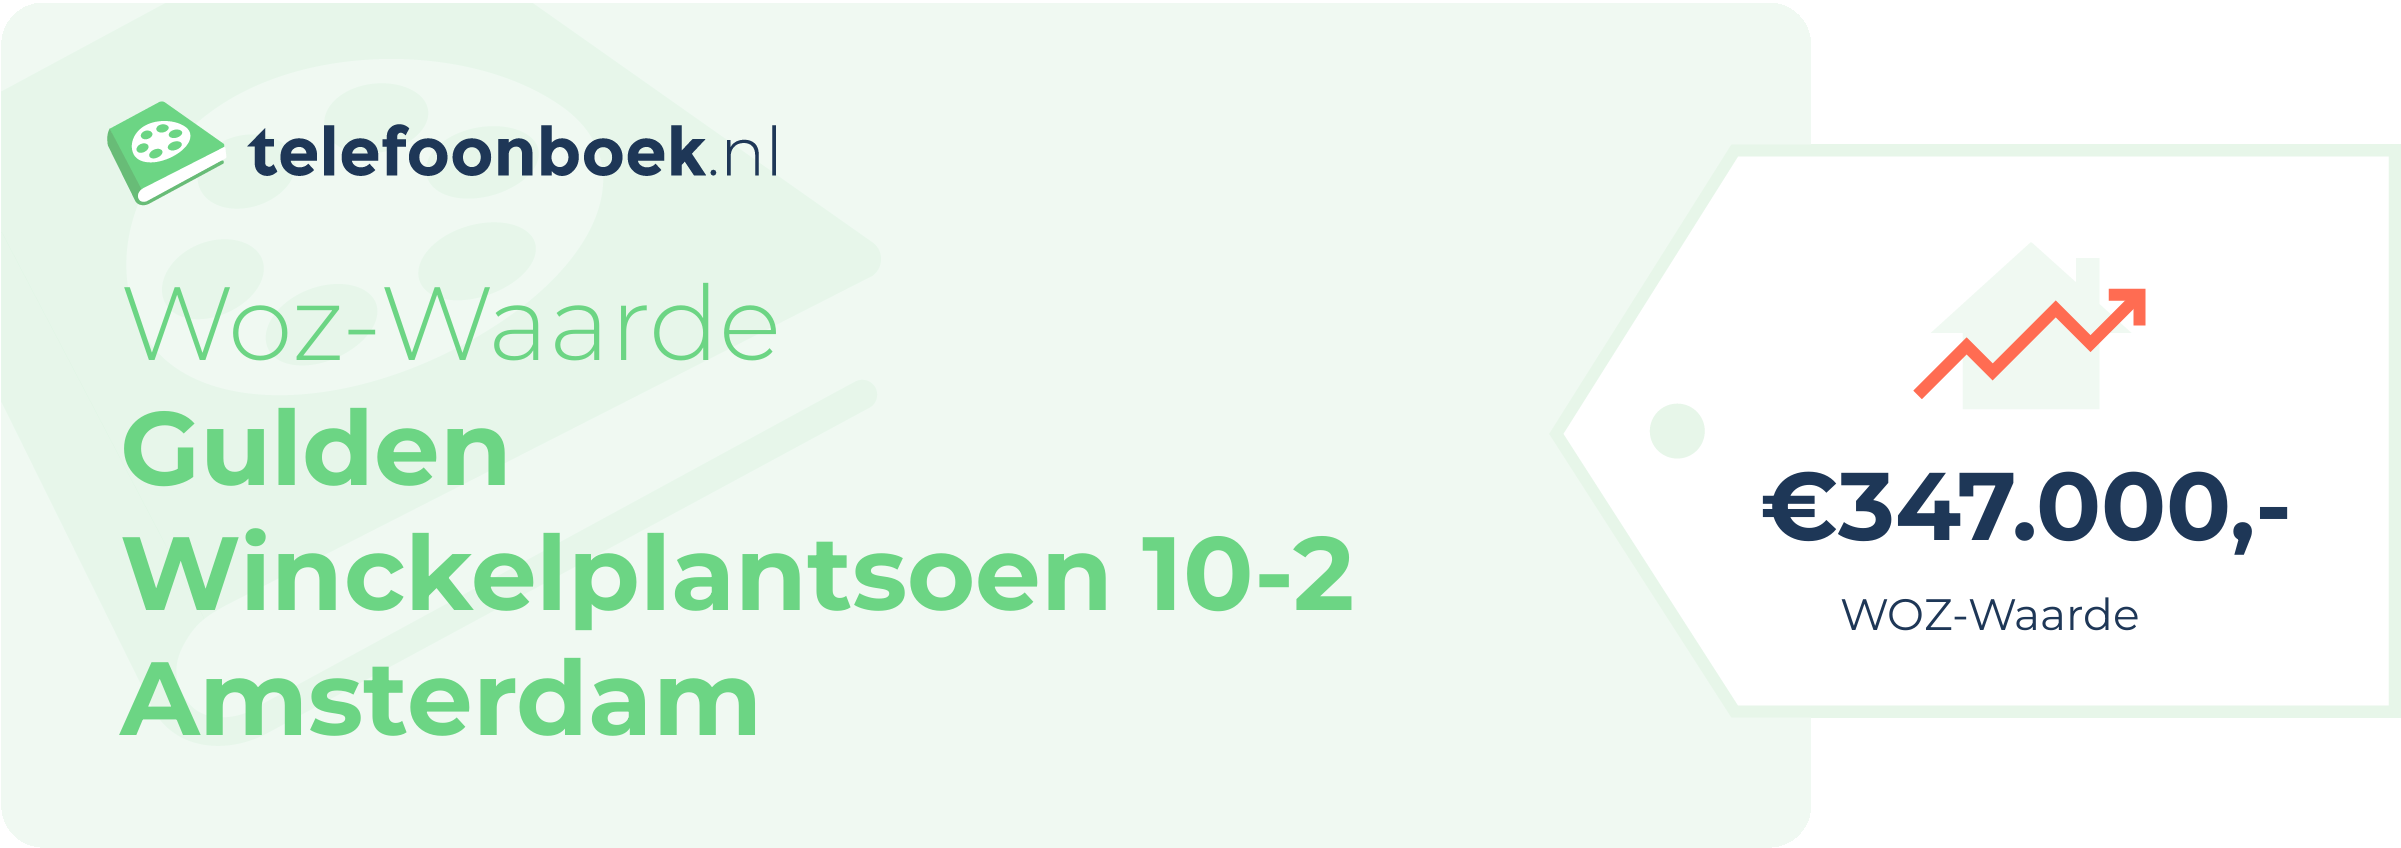 WOZ-waarde Gulden Winckelplantsoen 10-2 Amsterdam